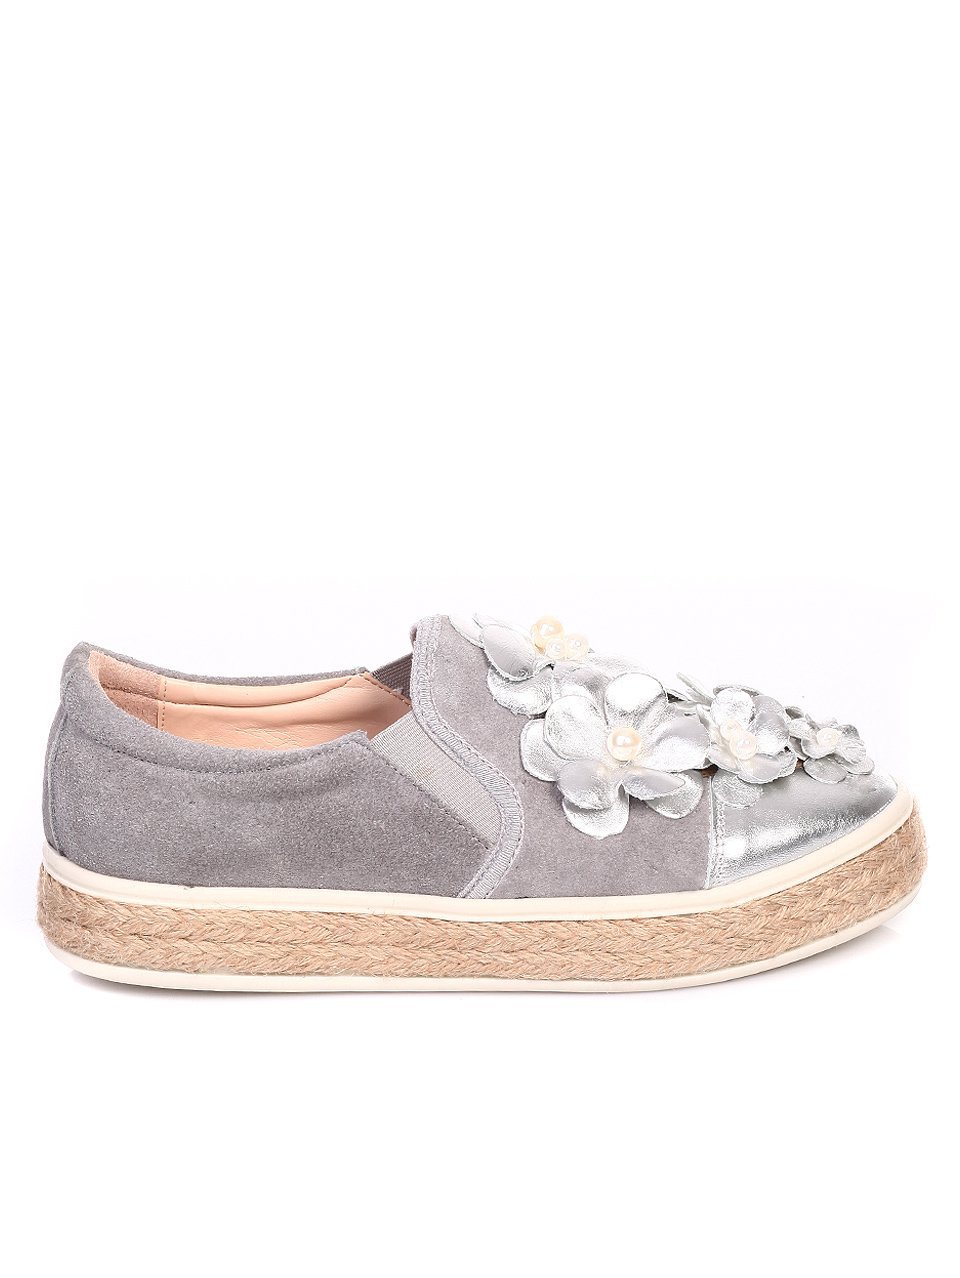 Дамски обувки от естествена кожа и естествен велур 3AT-17628 silver/grey